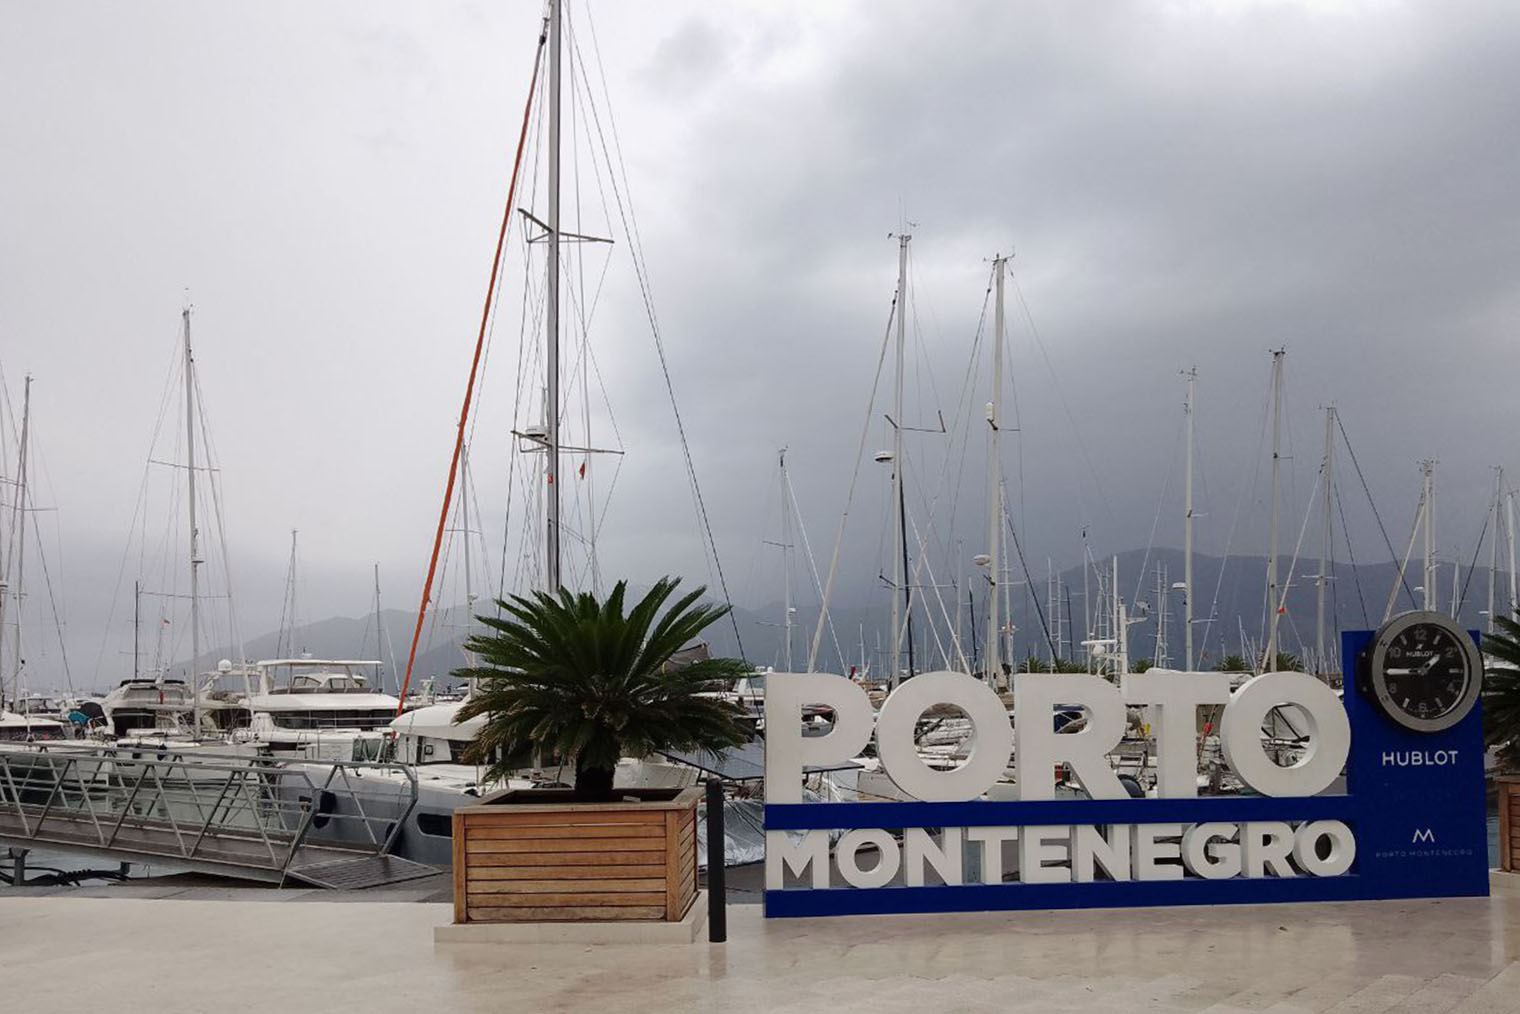 В Porto Montenegro было приятно прогуляться среди яхт